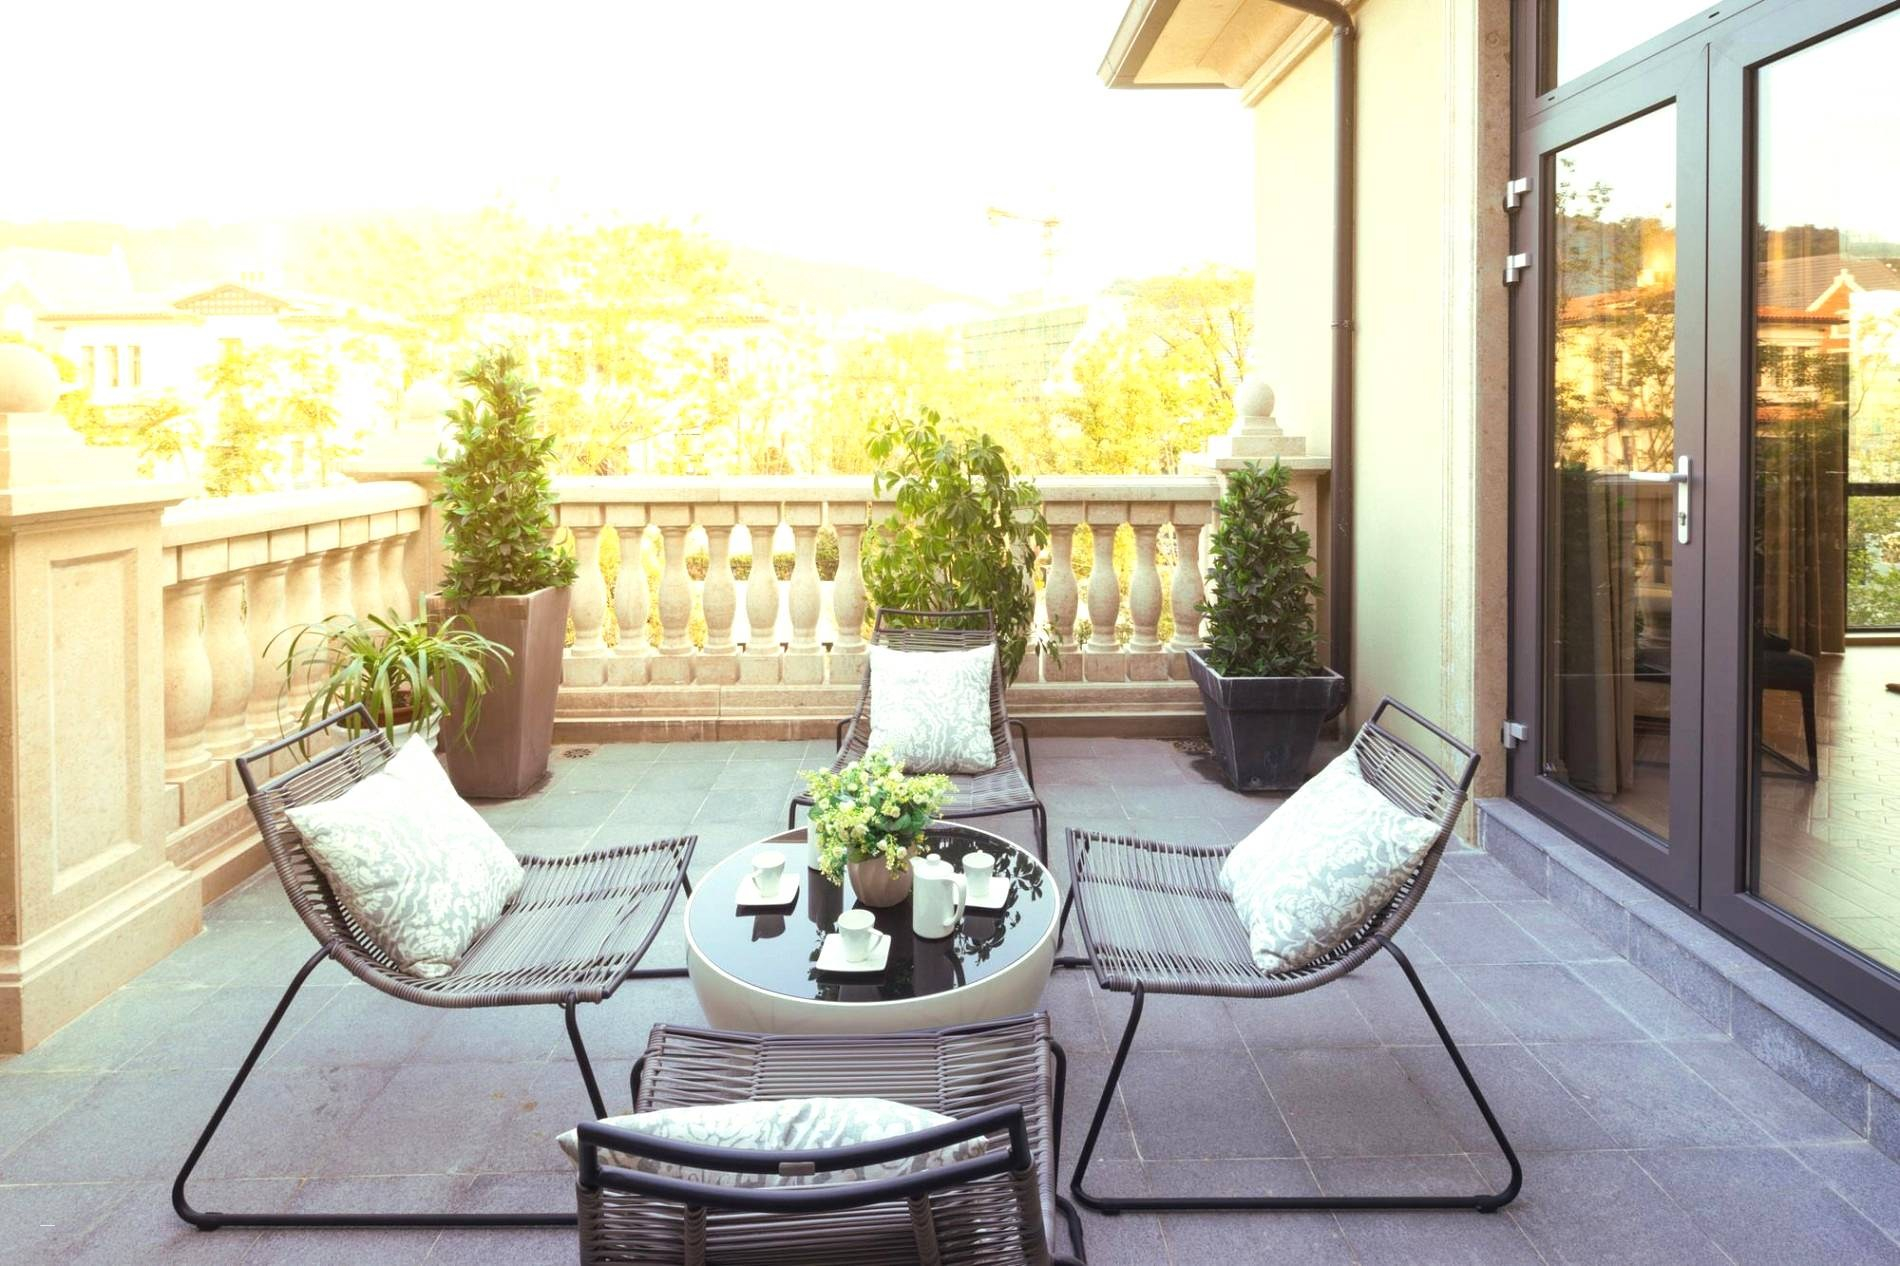 Garten Einrichten Inspirierend Balkon Einrichten Ideen Genial Luxus Kleine Terrasse